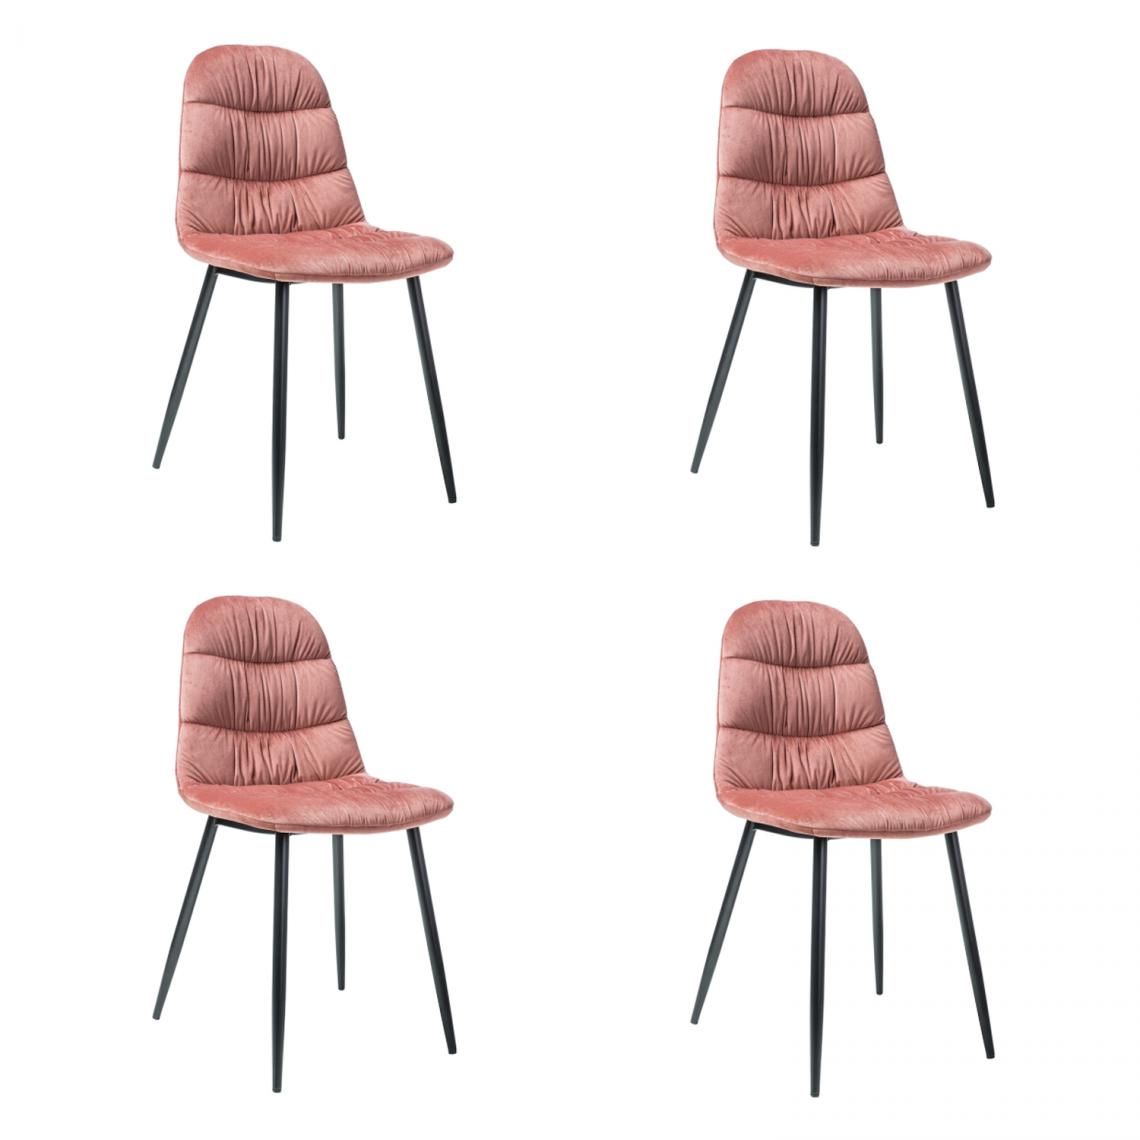 Hucoco - VEBIS - Lot de 4 chaises pour la salle à manger - Style scandinave - 87x44x38 cm - Ttissu velouté - Rose - Chaises